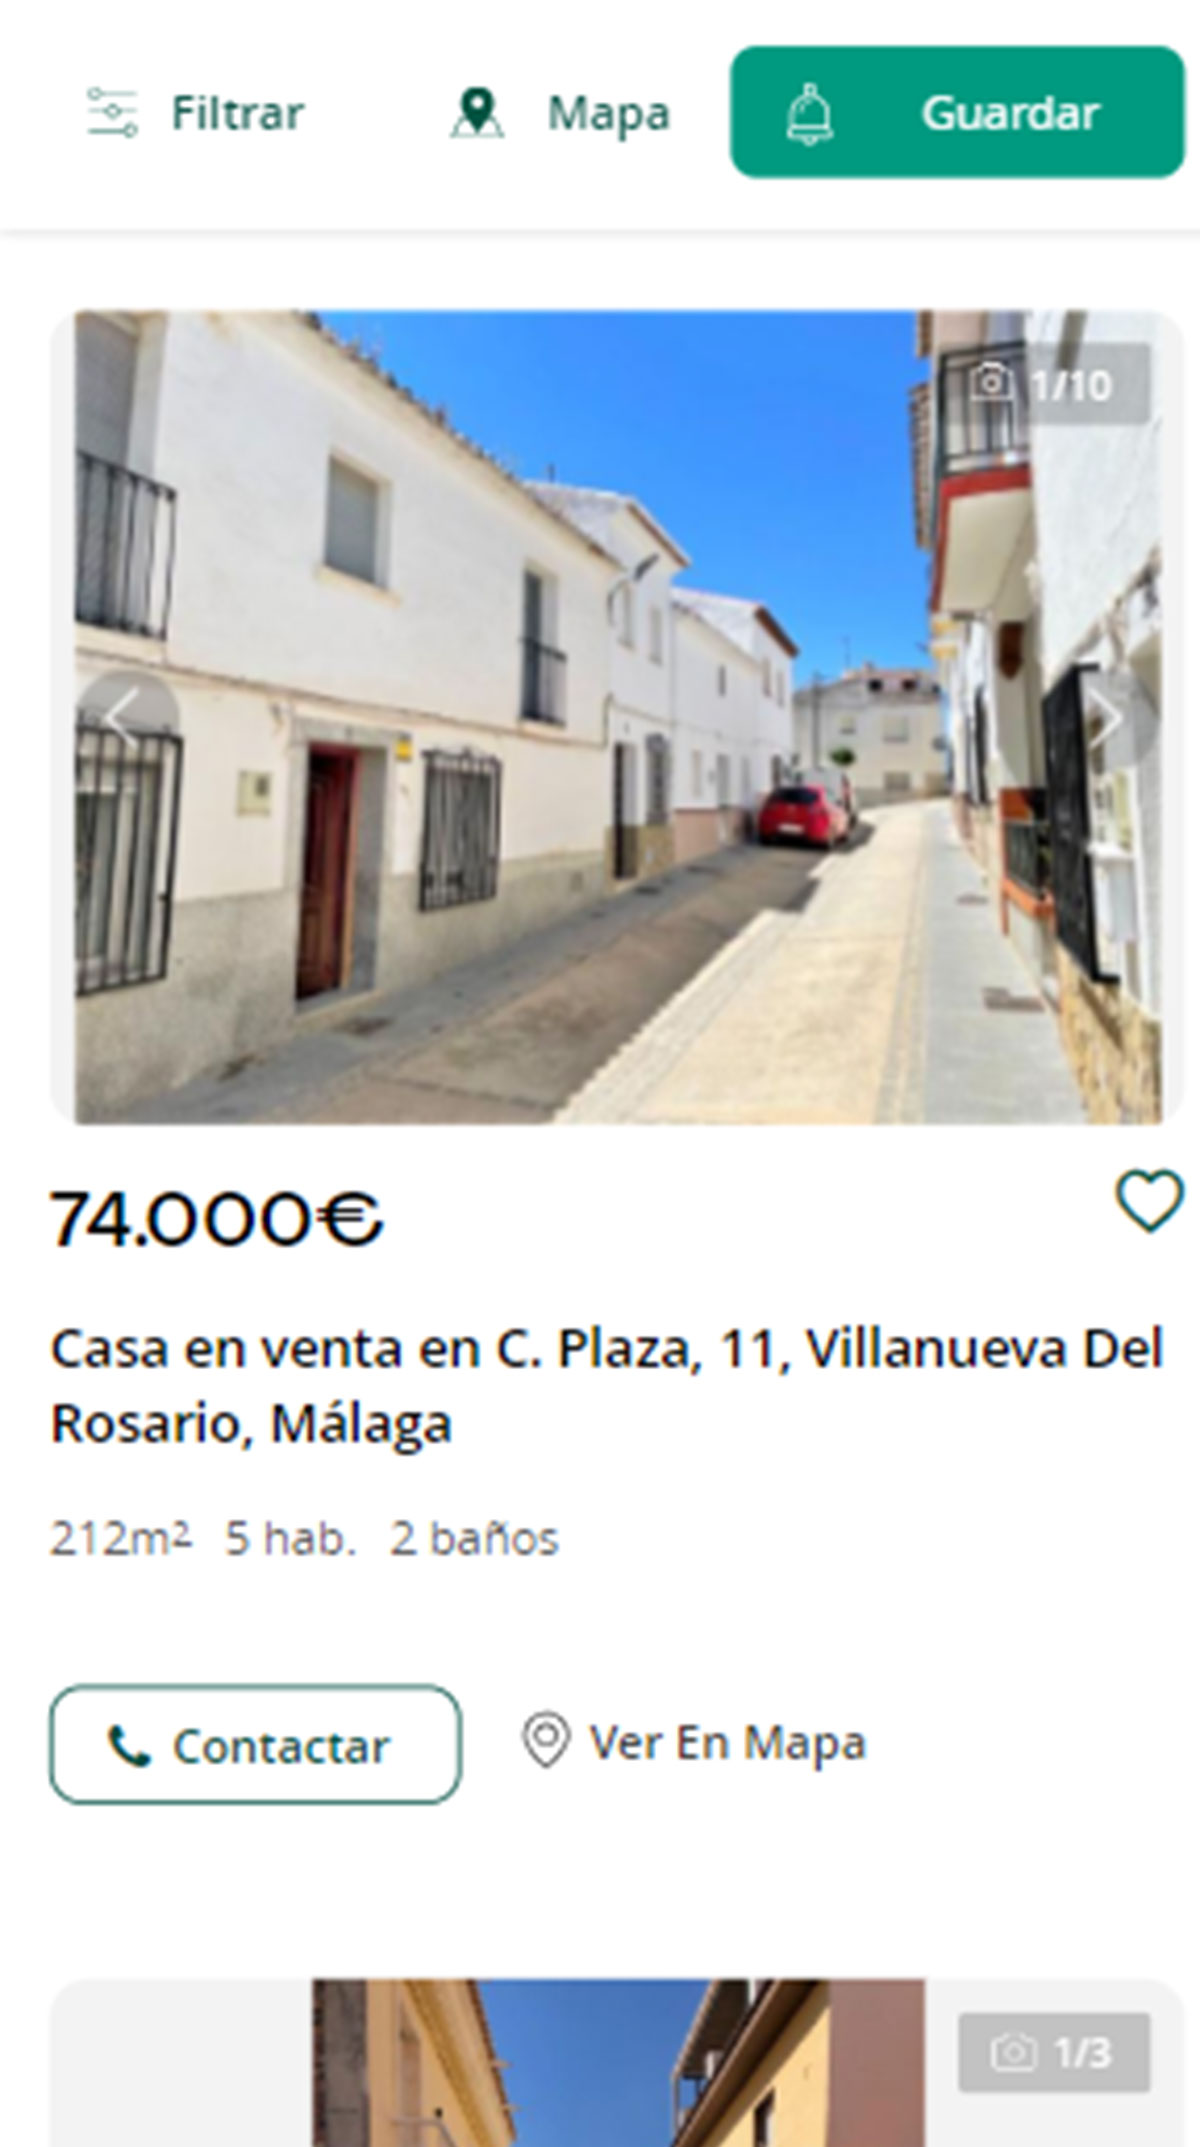 Piso a la venta en Málaga por 74.000 euros